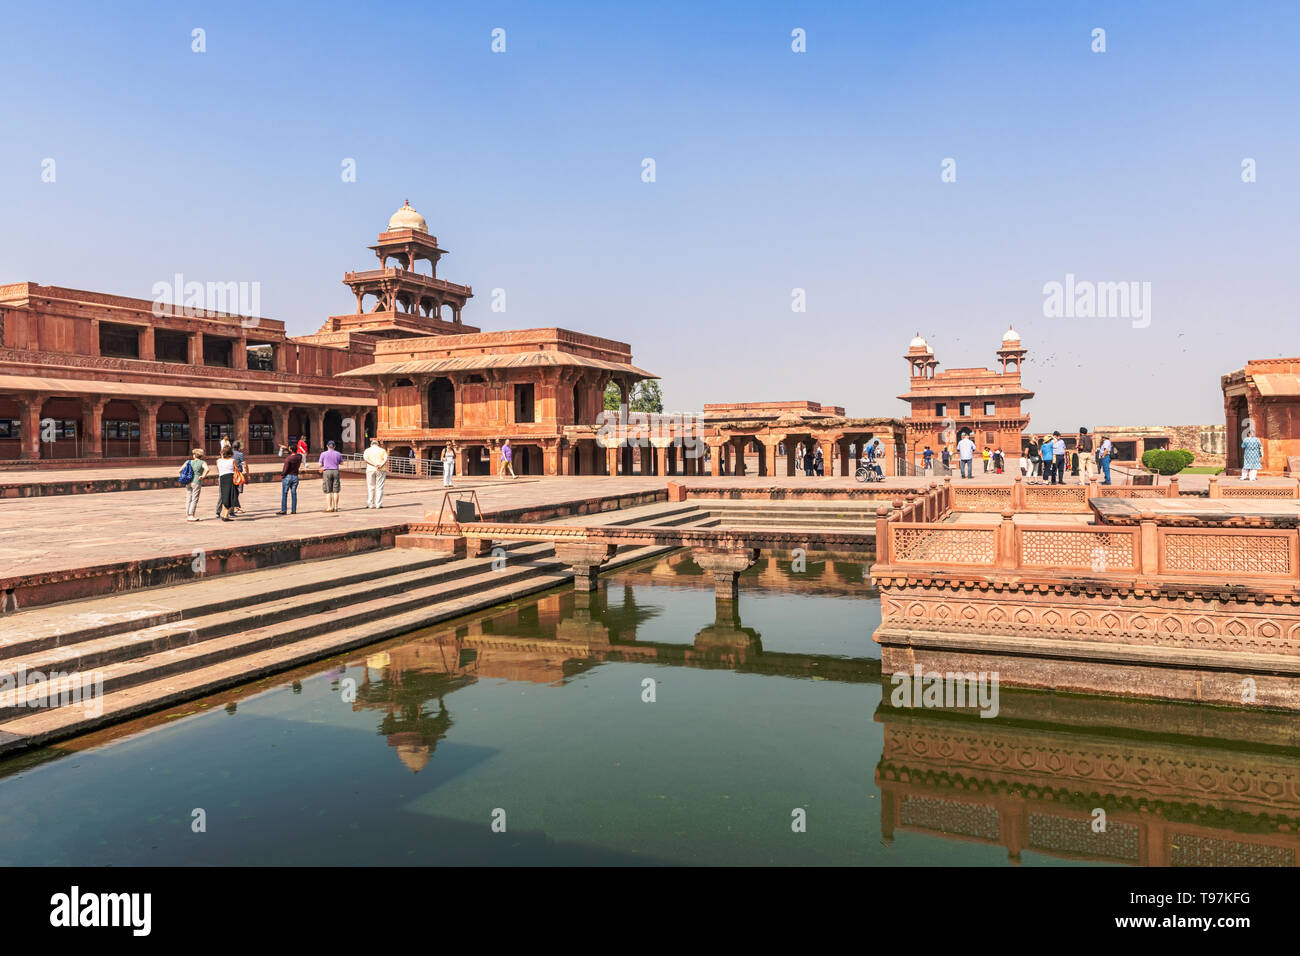 Agra, Inde - 20 novembre 2018 : les touristes visitant Panch Mahal, Palais Royal à Fatehpur Sikri, ville construite par le grand empereur moghol Akbar à la fin du 16e siècle Banque D'Images